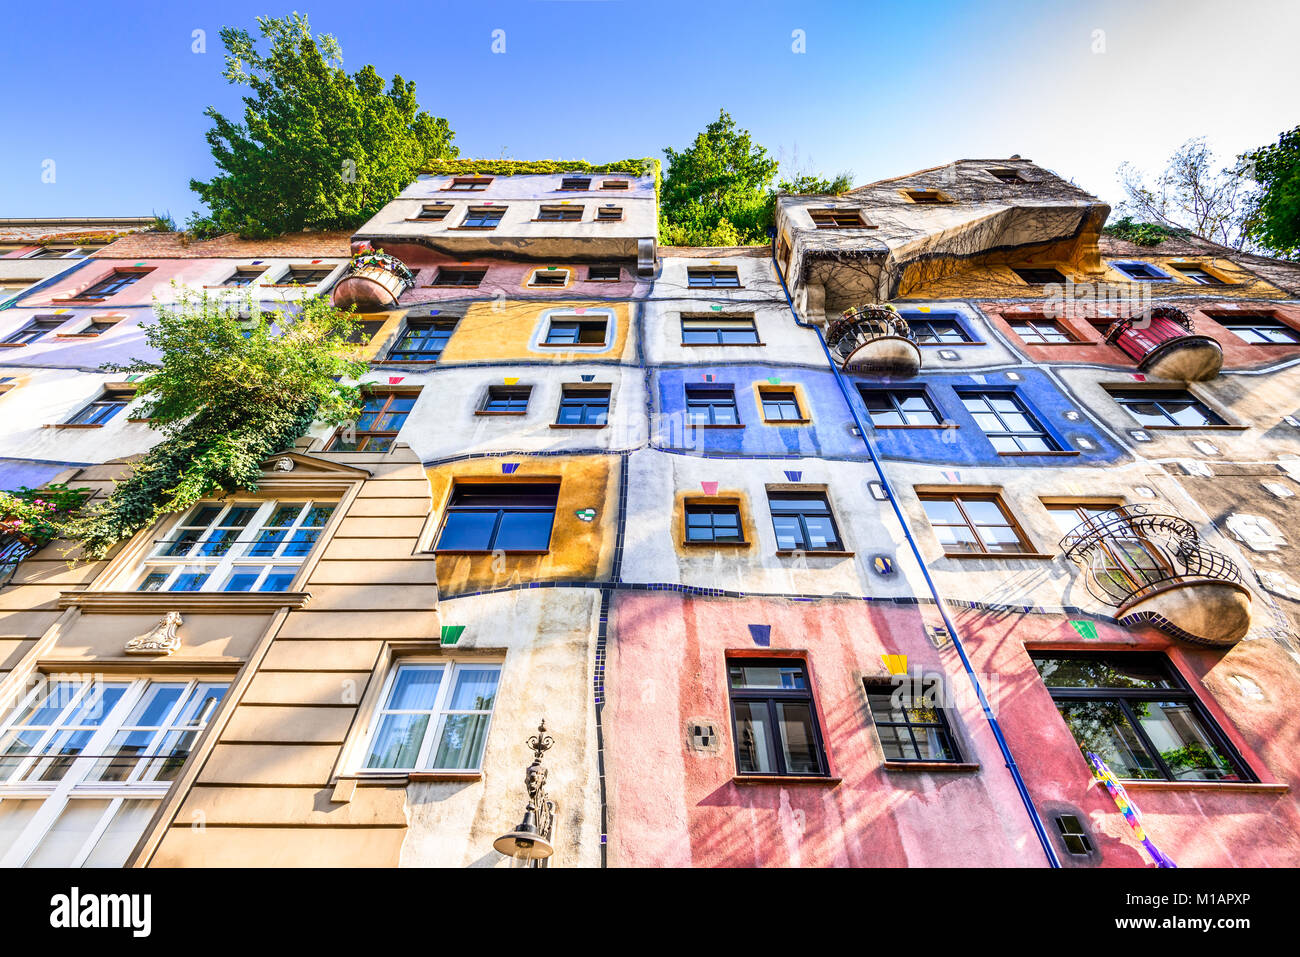 Vienne, AUTRICHE - 2e août 2015 : une vue de l'extérieur des bâtiments de Hundertwasserhaus, monument expressionniste à Vienne pendant la journée. Banque D'Images